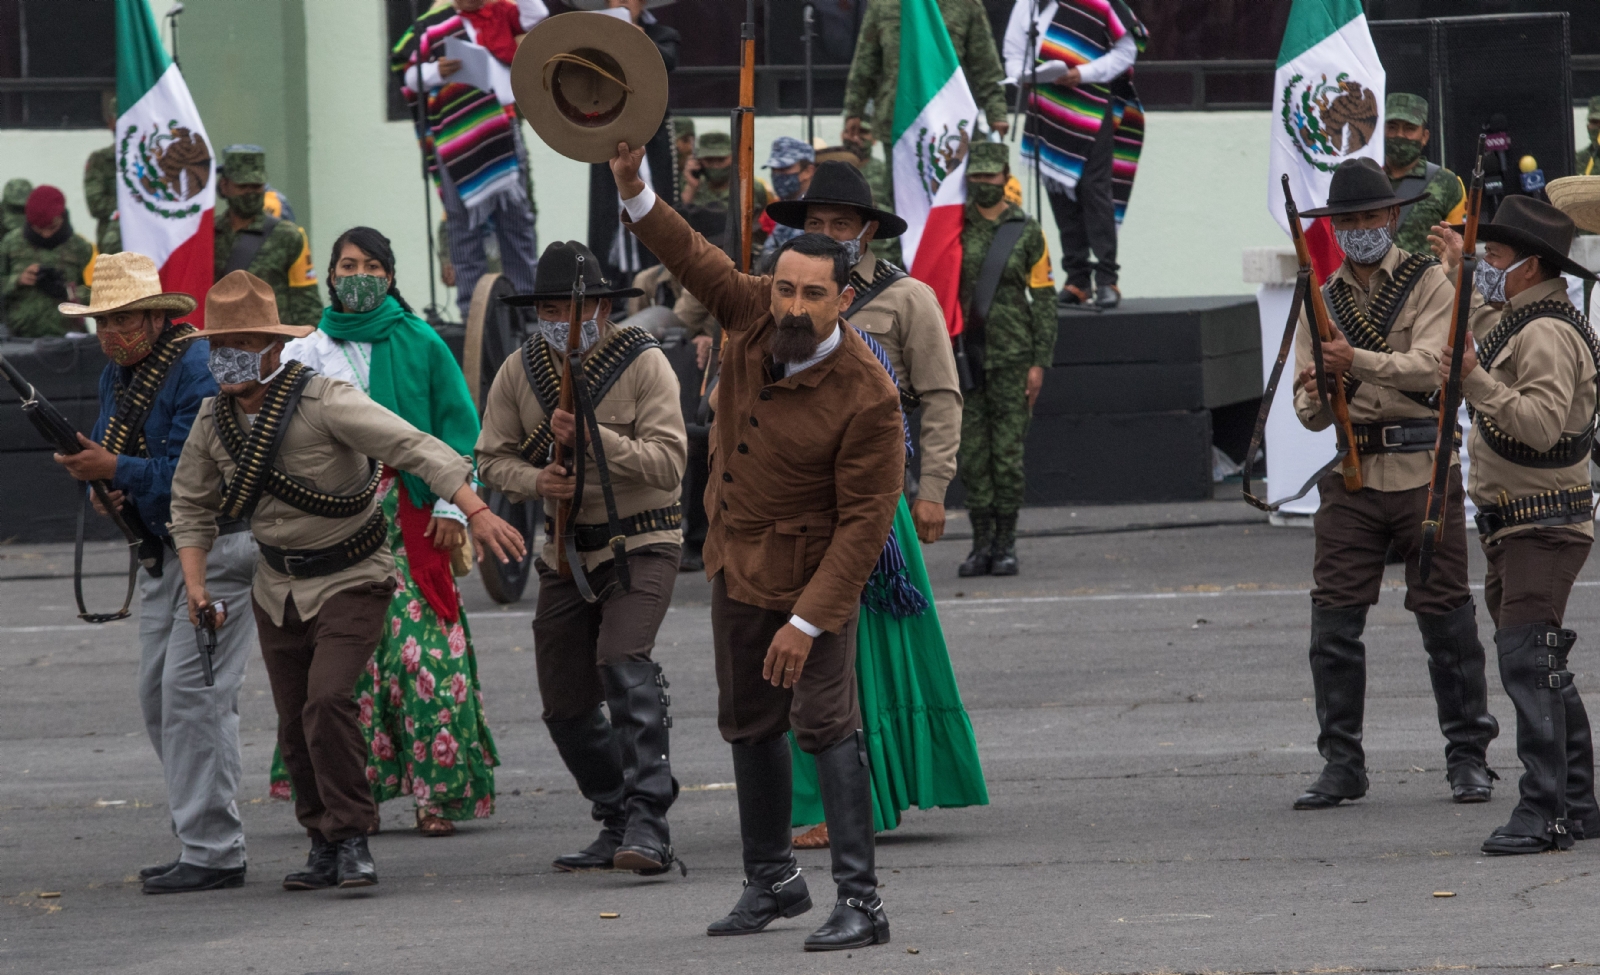 Sigue en vivo el Desfile Militar de la Revolución Mexicana en CDMX